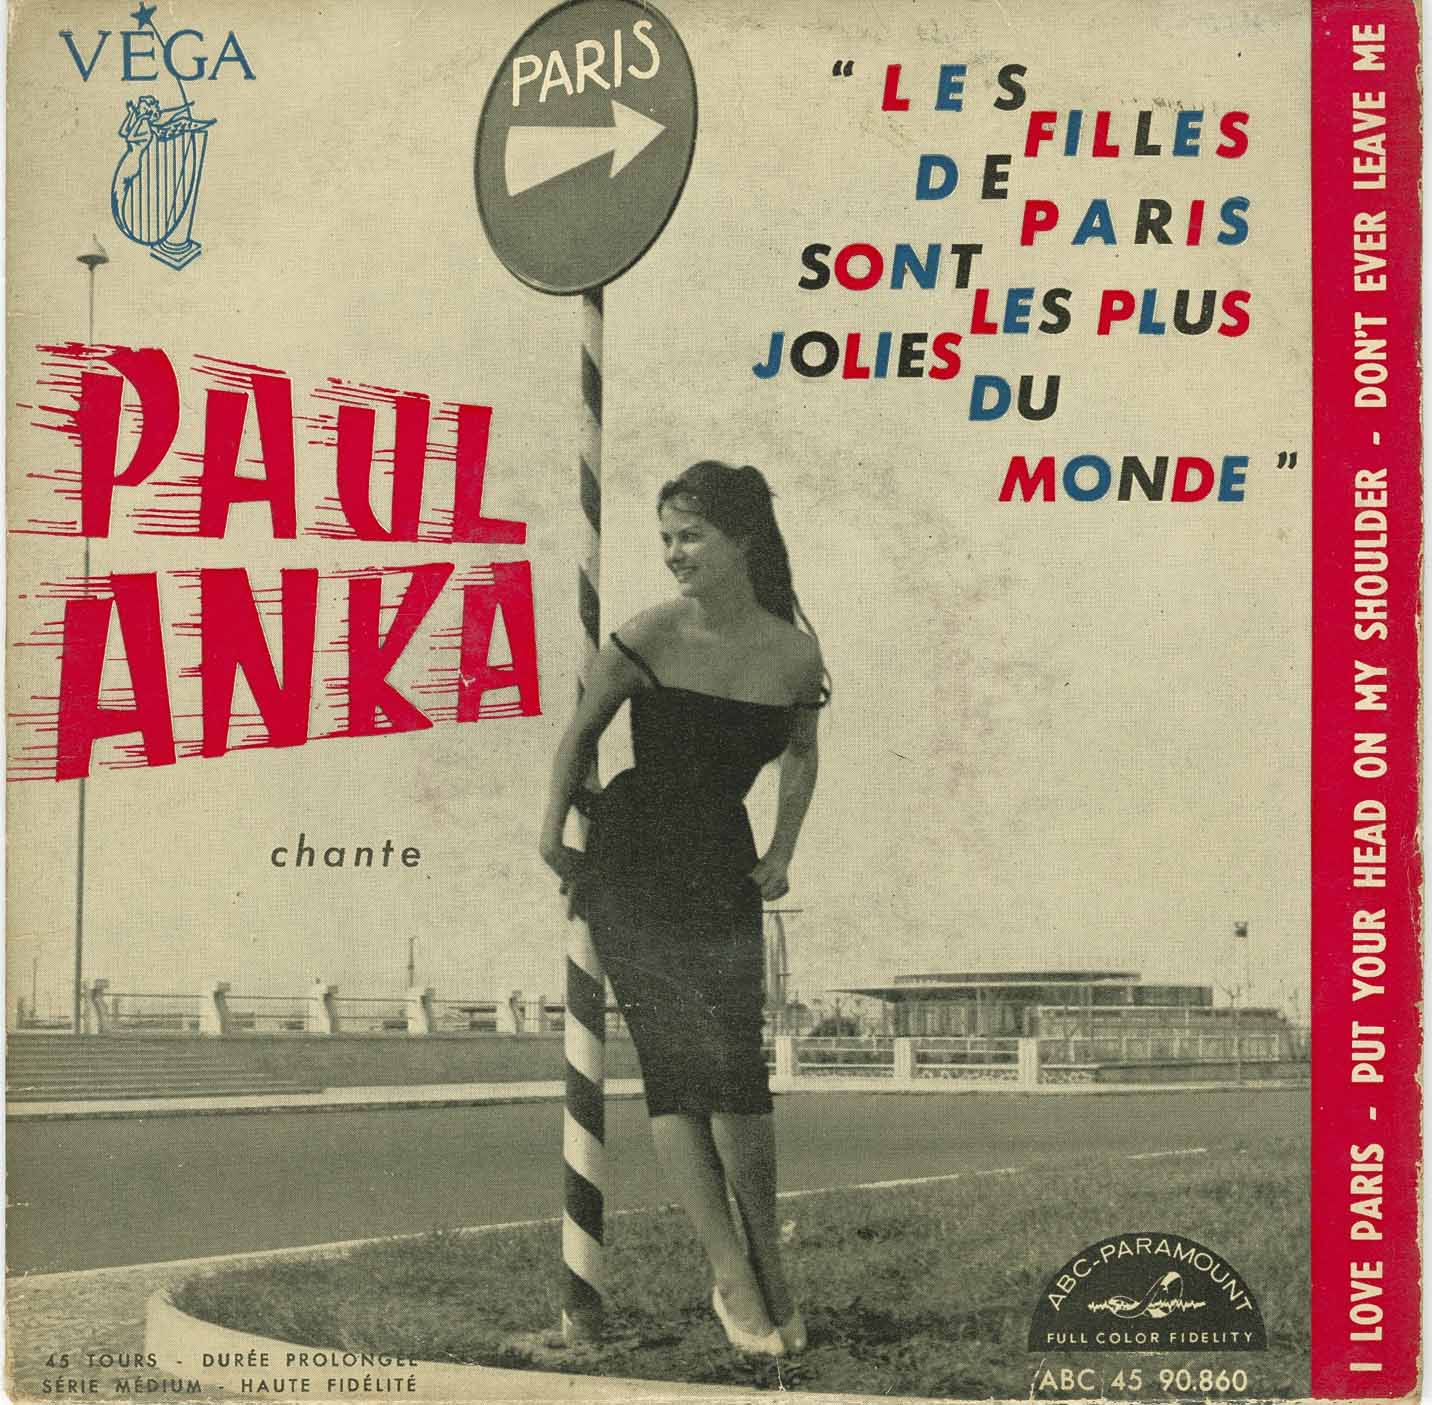 Anka Paul Les Filles De Paris I Love Paris Bw Put Your Head On My Shoulder Dont Ever